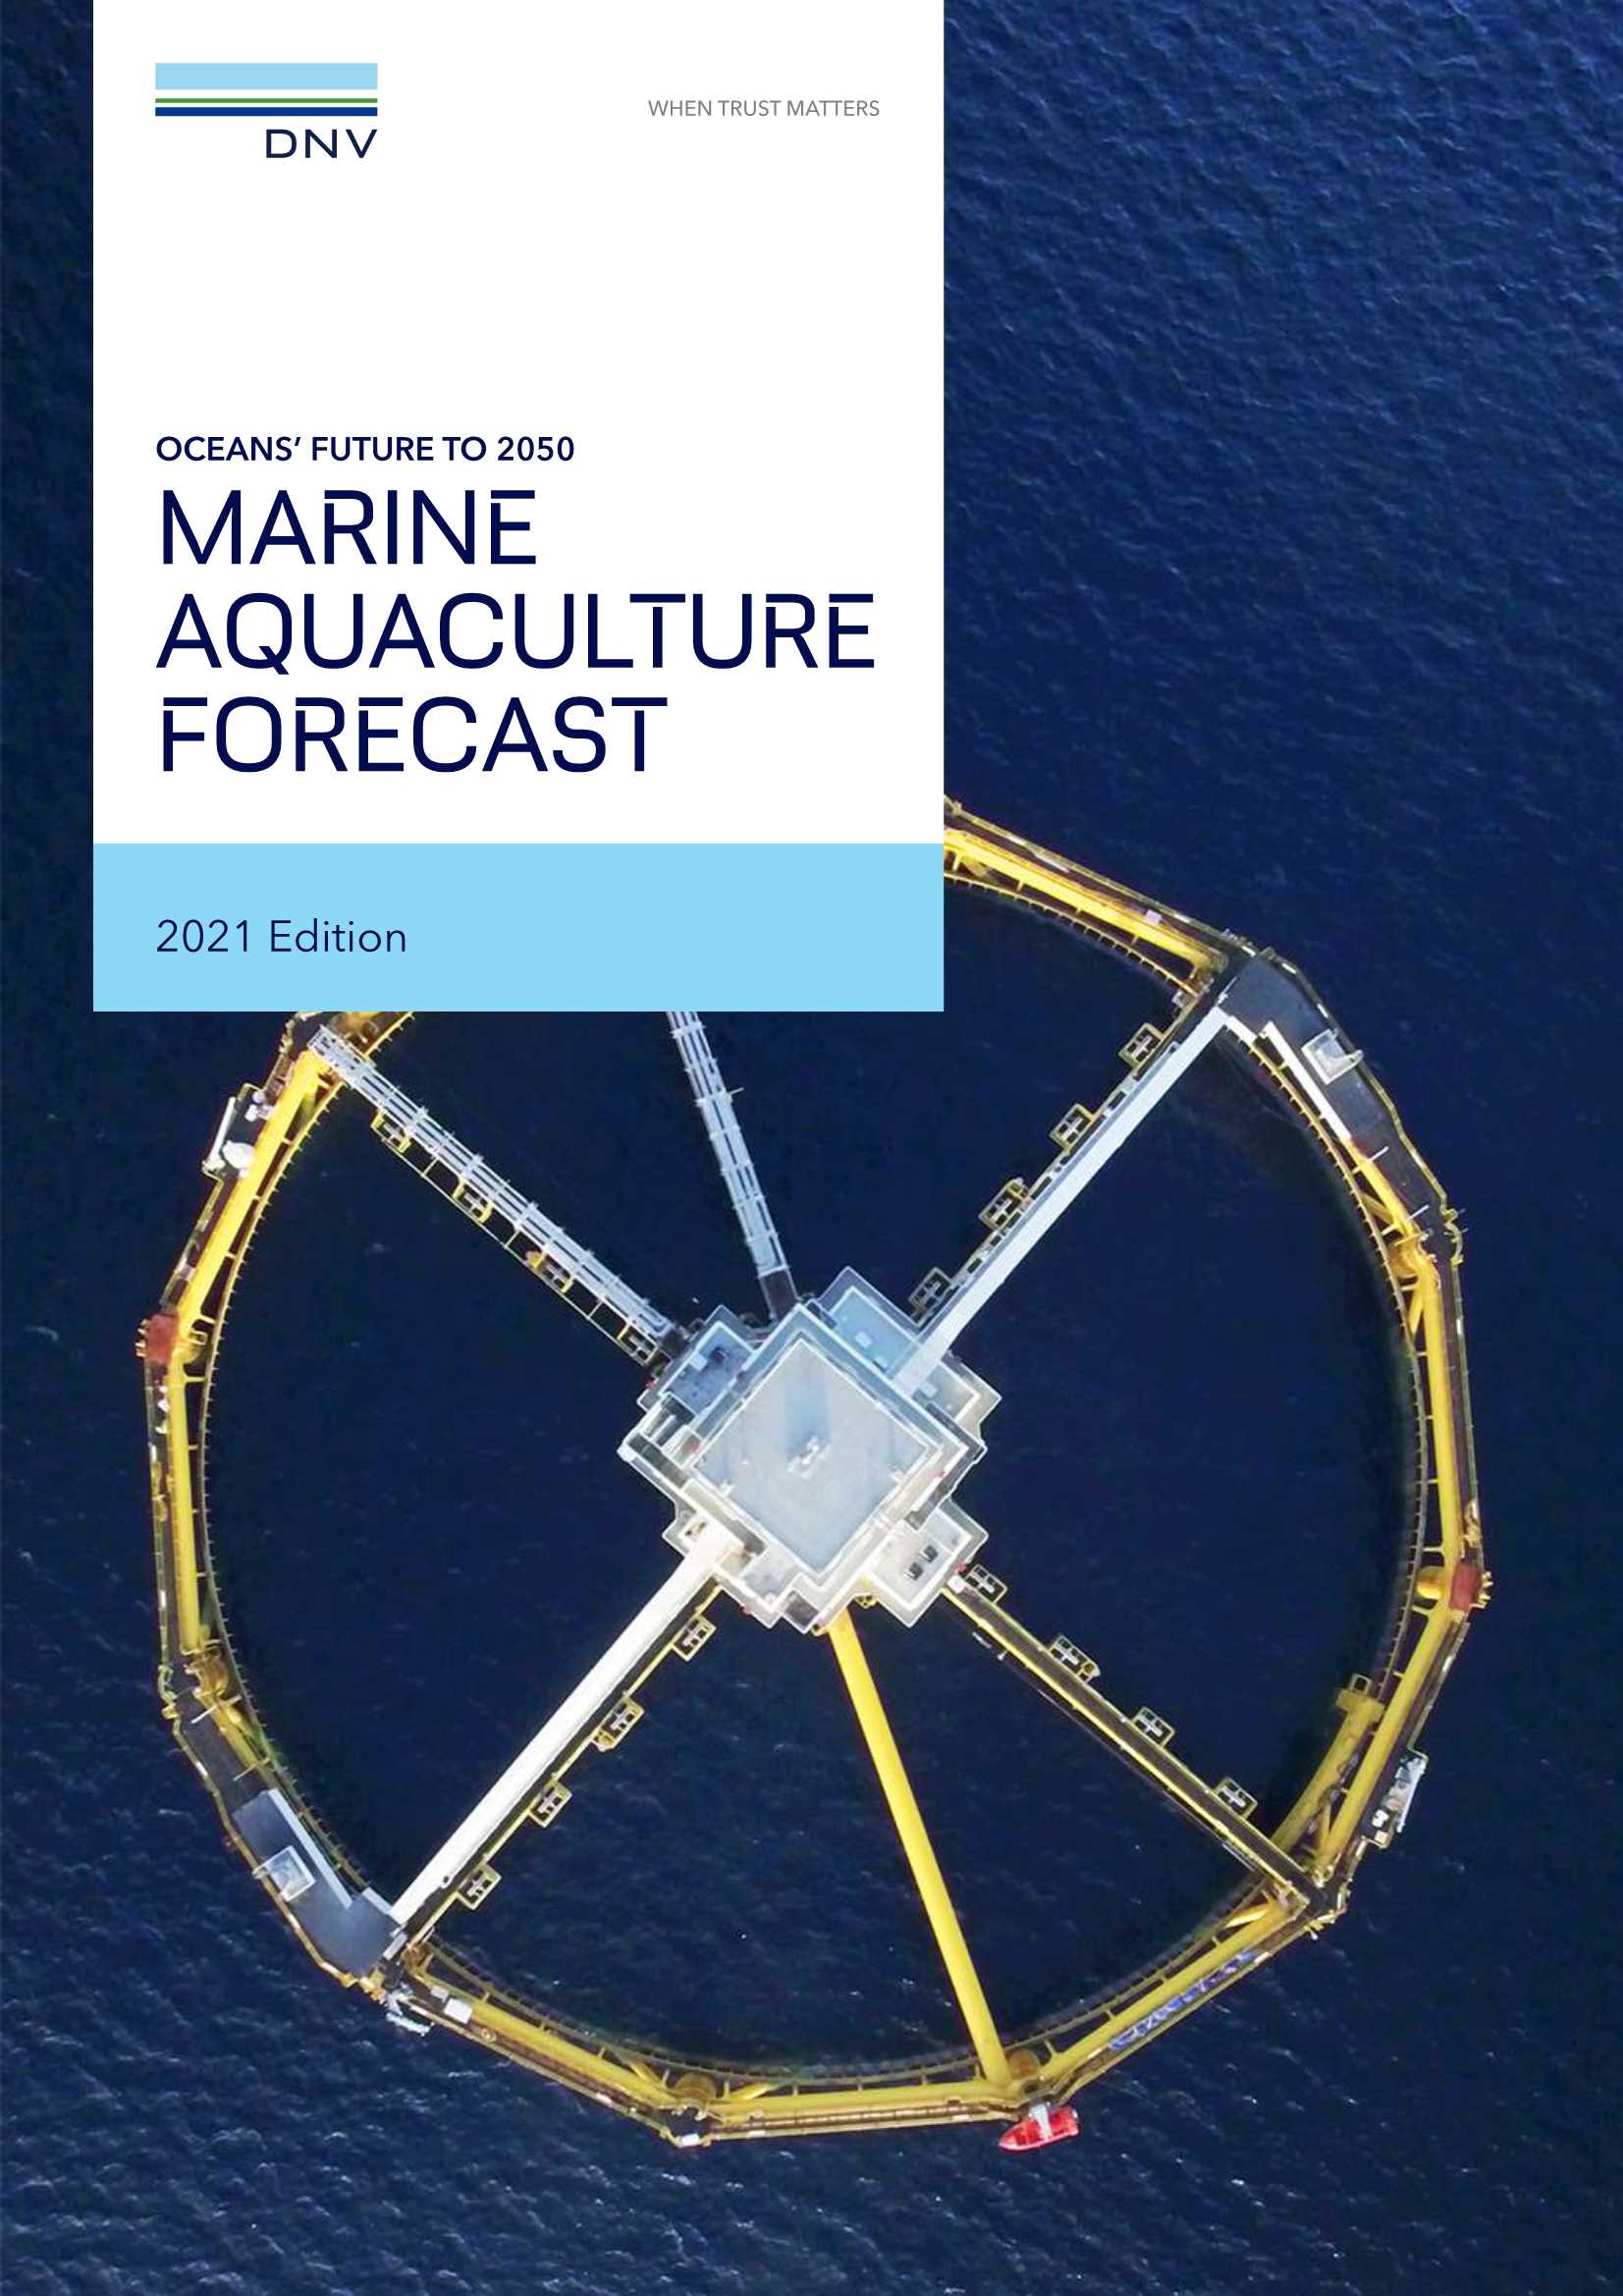 DNV-2050年海洋的未来：海水养殖预测（英文）-2021.06-48页